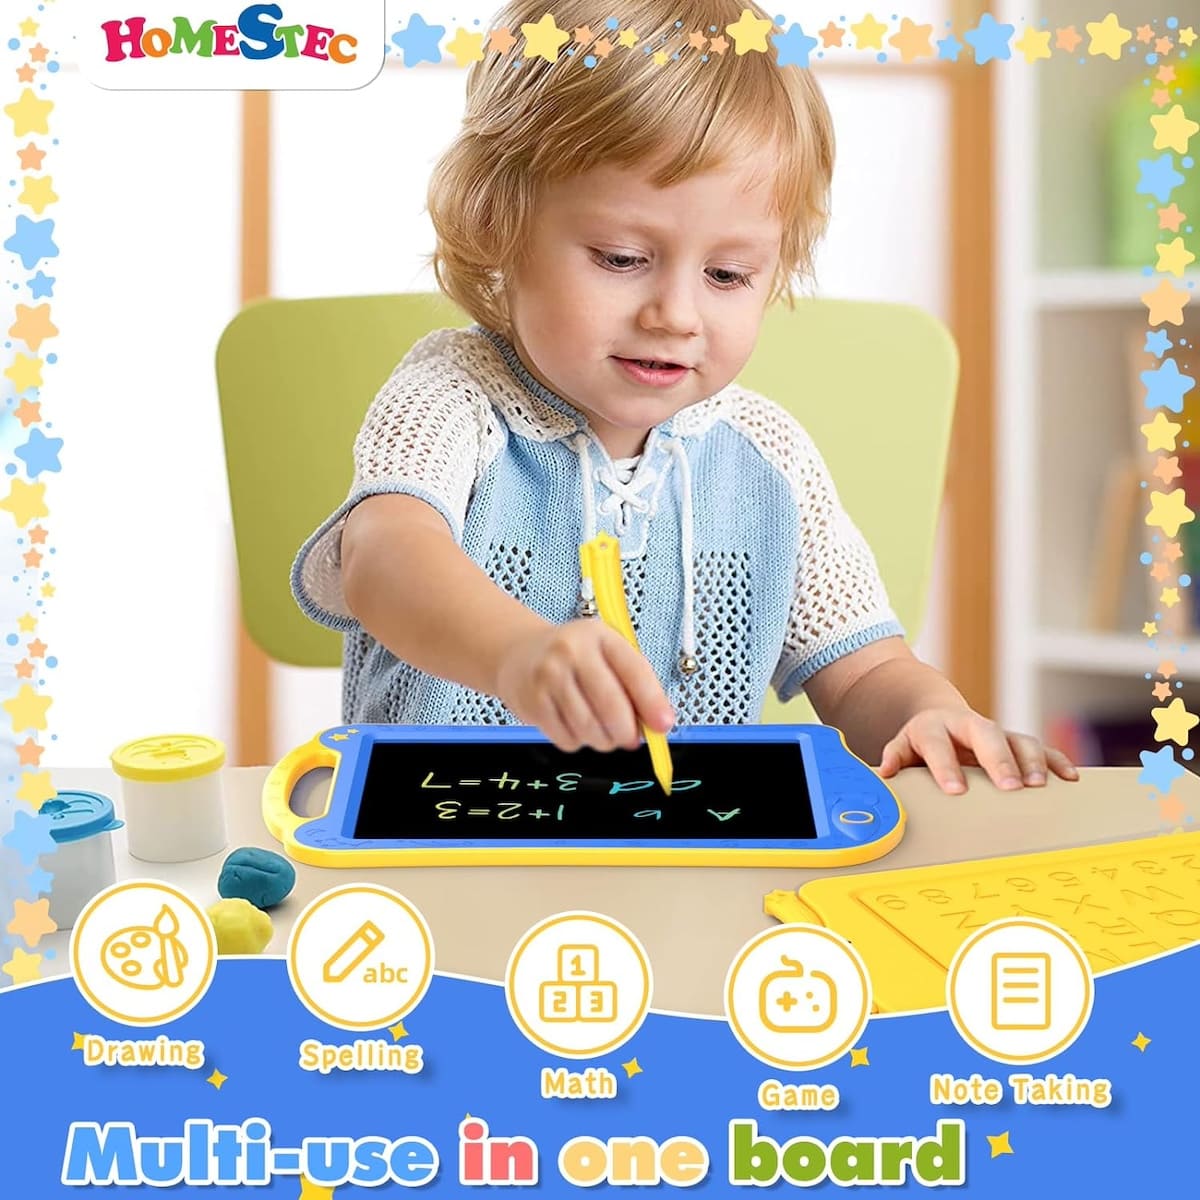 Magiczny tablet do rysowania z wyświetlaczem LCD dla dzieci